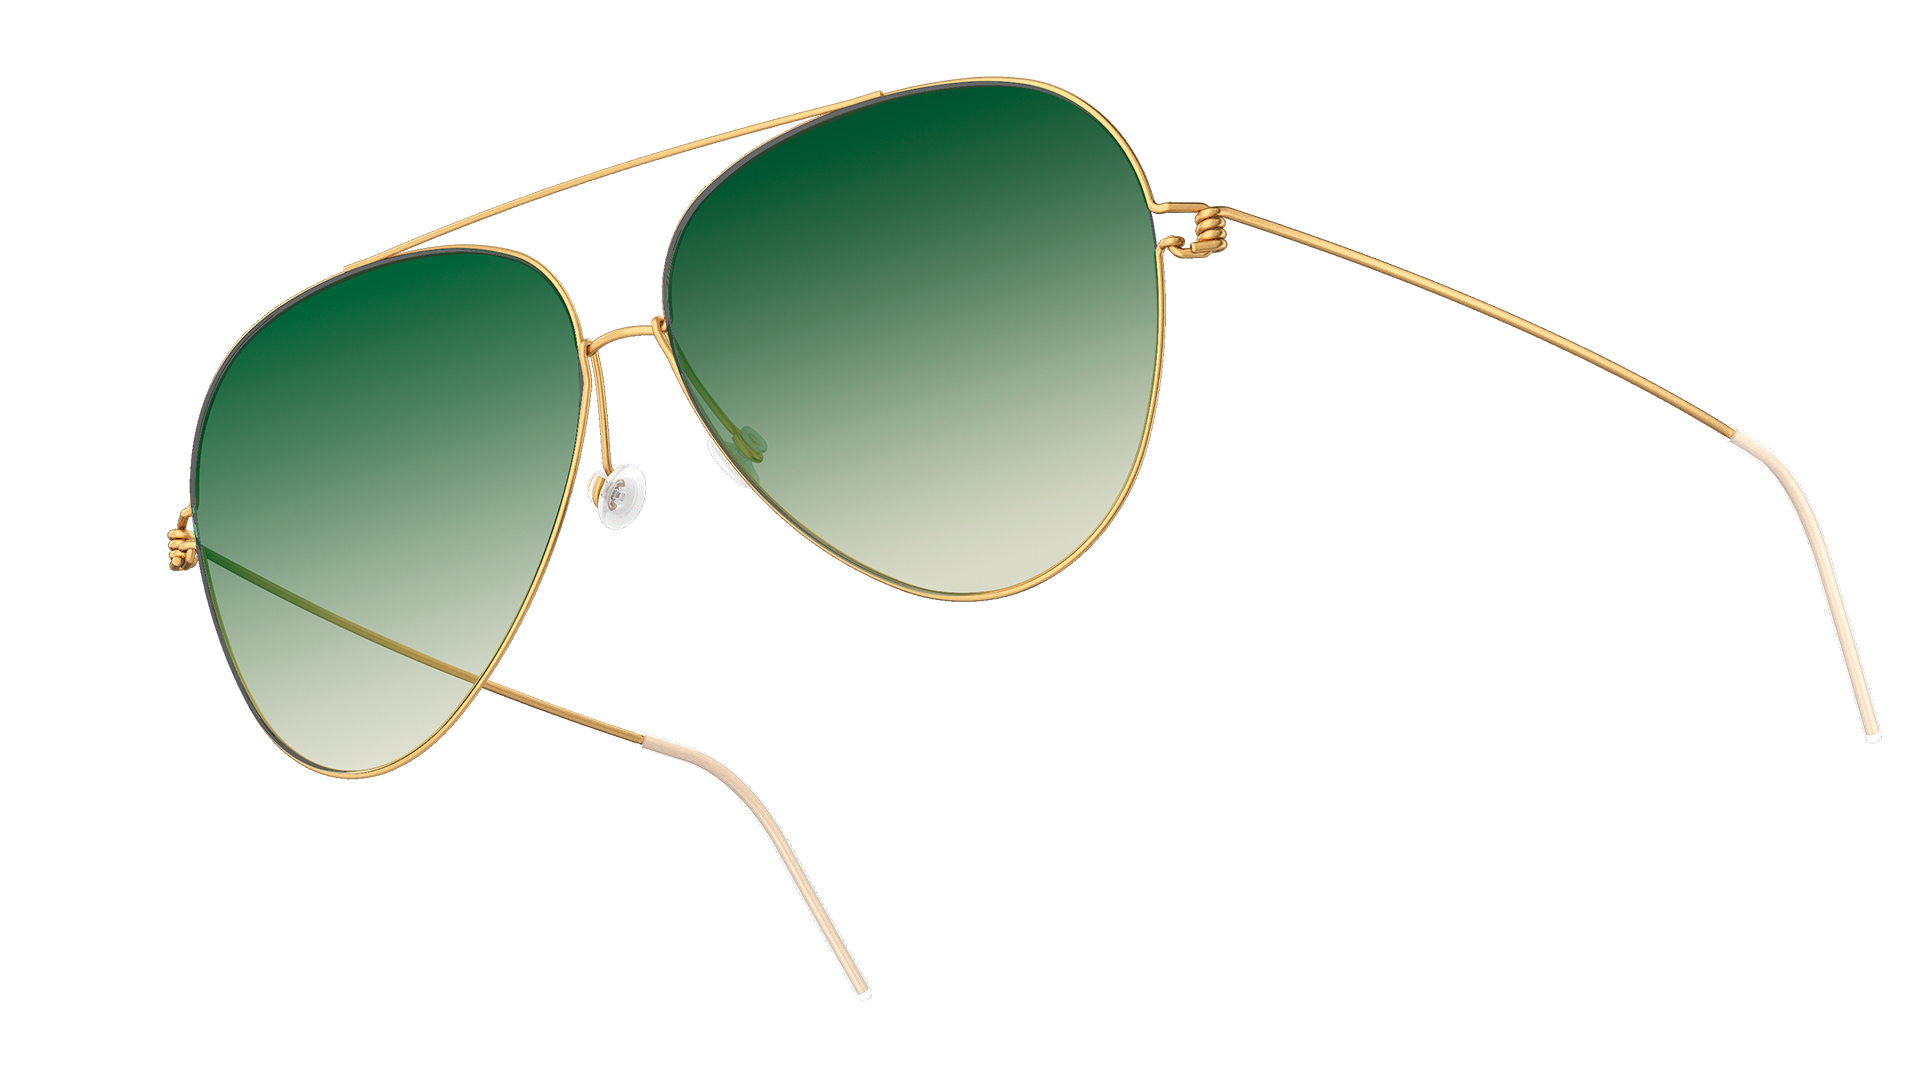 Goldene Piloten-Sonnenbrille mit getönten Gläsern mit Farbverlauf in Grün SL34, Modell 8209 aus der Kollektion LINDBERG sun titanium